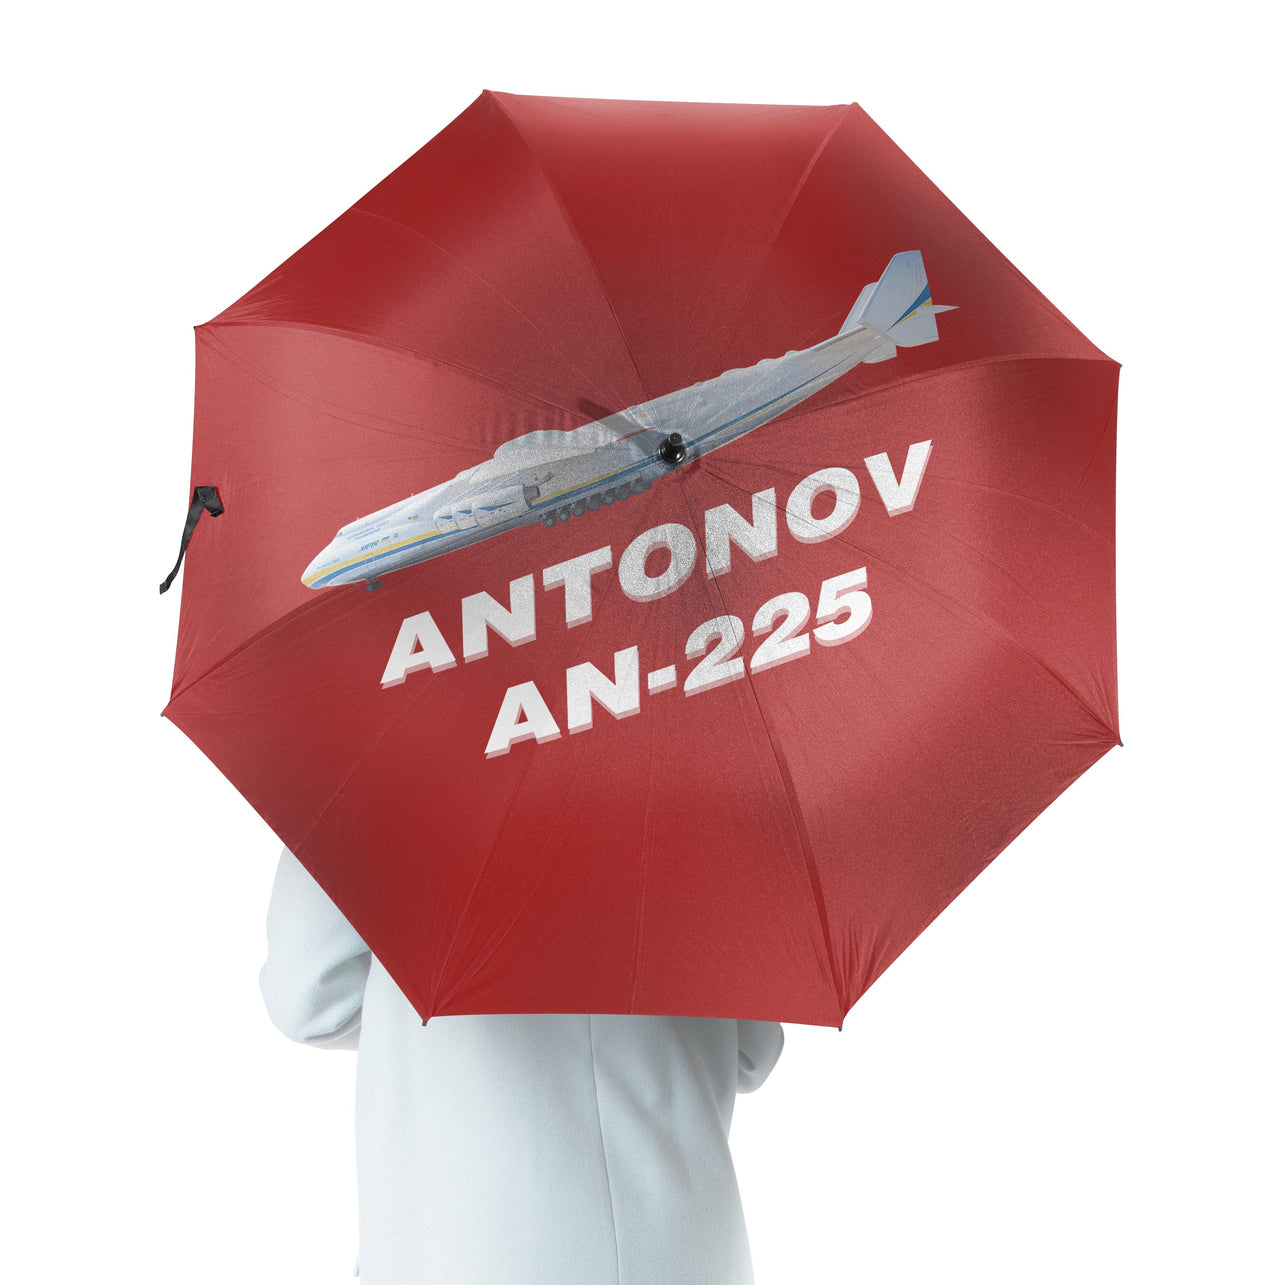 The Antonov AN-225 Designed Umbrella